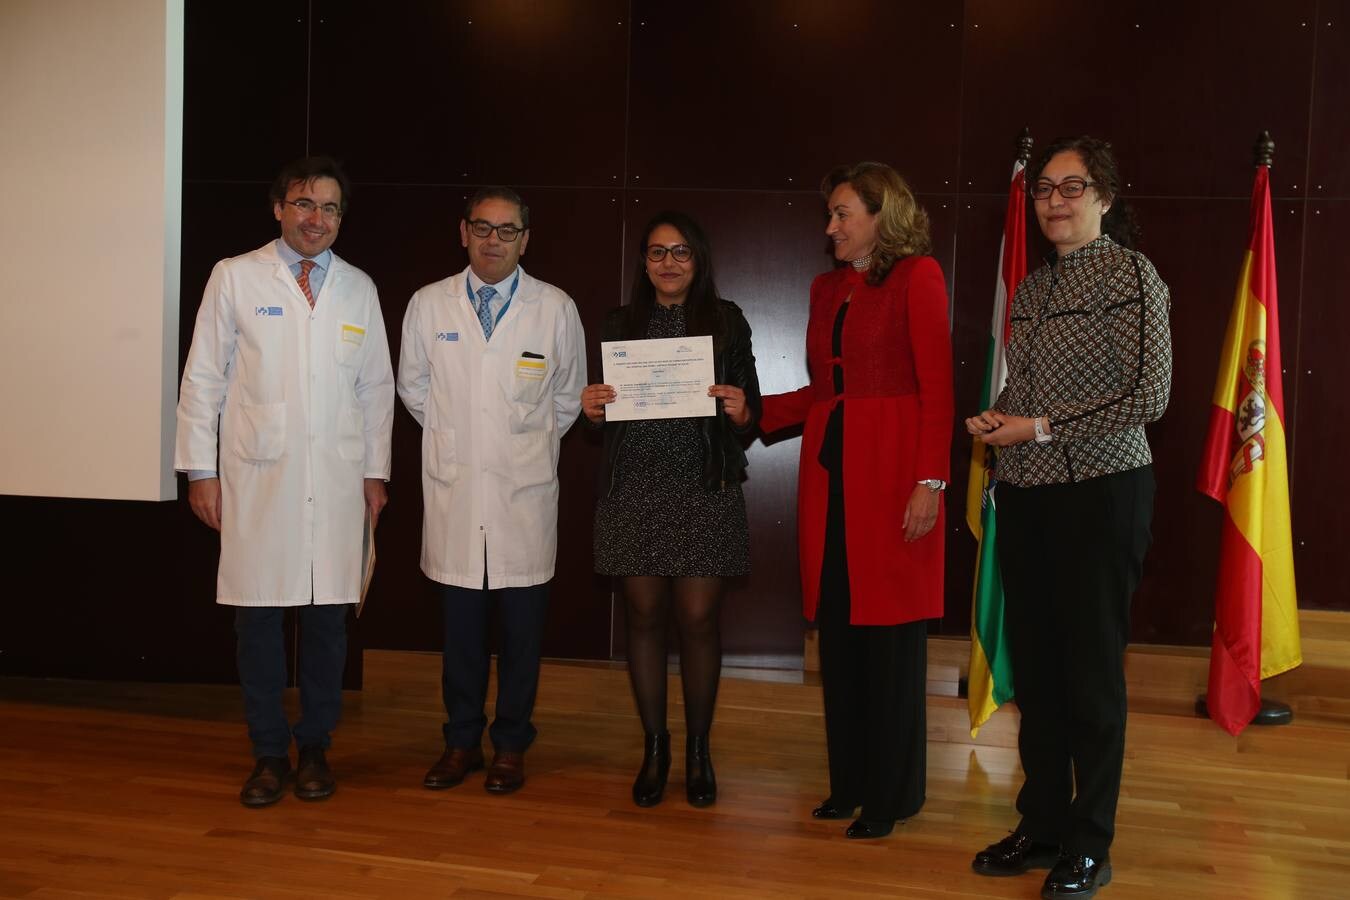 La consejera de Salud, María Martín, ha presidido el acto de despedida de los residentes que han concluido su período de formación en los centros sanitarios del Servicio Riojano de Salud y da la bienvenida a los nuevos.